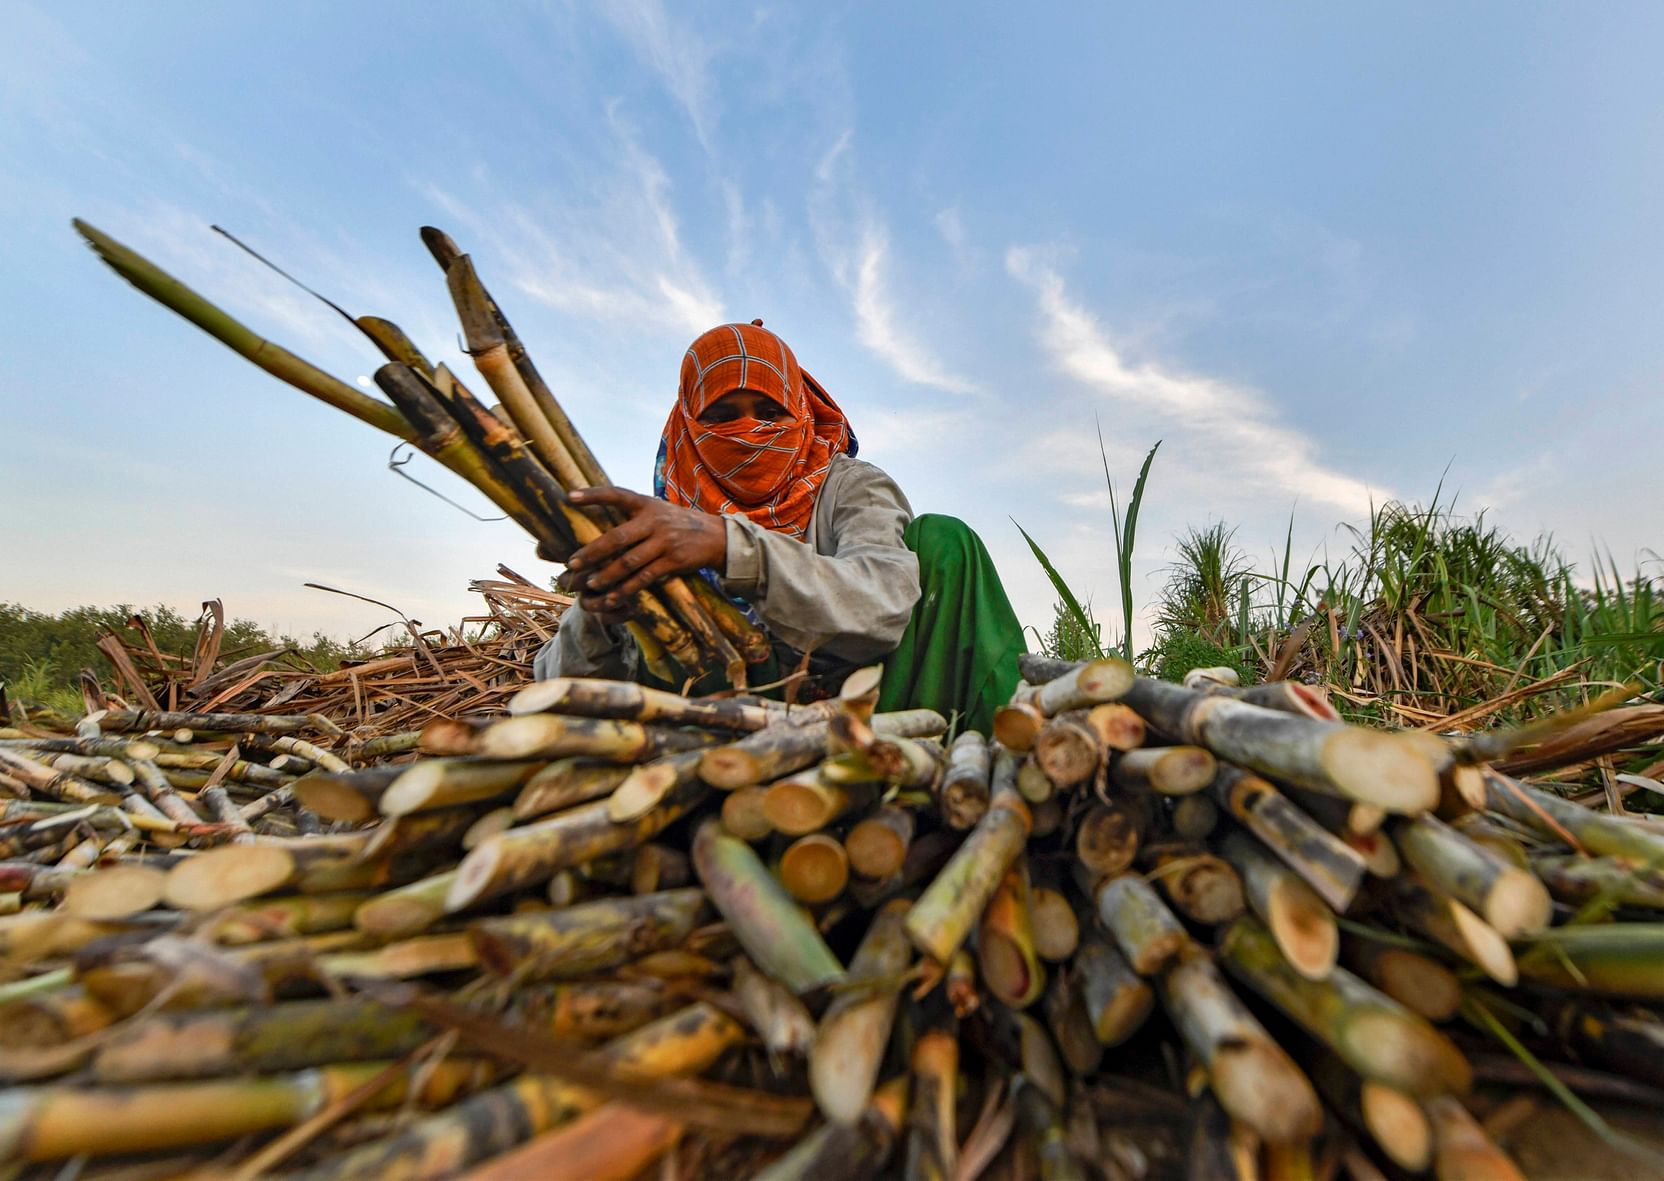 उत्तर प्रदेश: चीनी मिलों पर गन्ना किसानों का 12,000 करोड़ रुपये बकाया, कोर्ट ने सरकार से जवाब मांगा